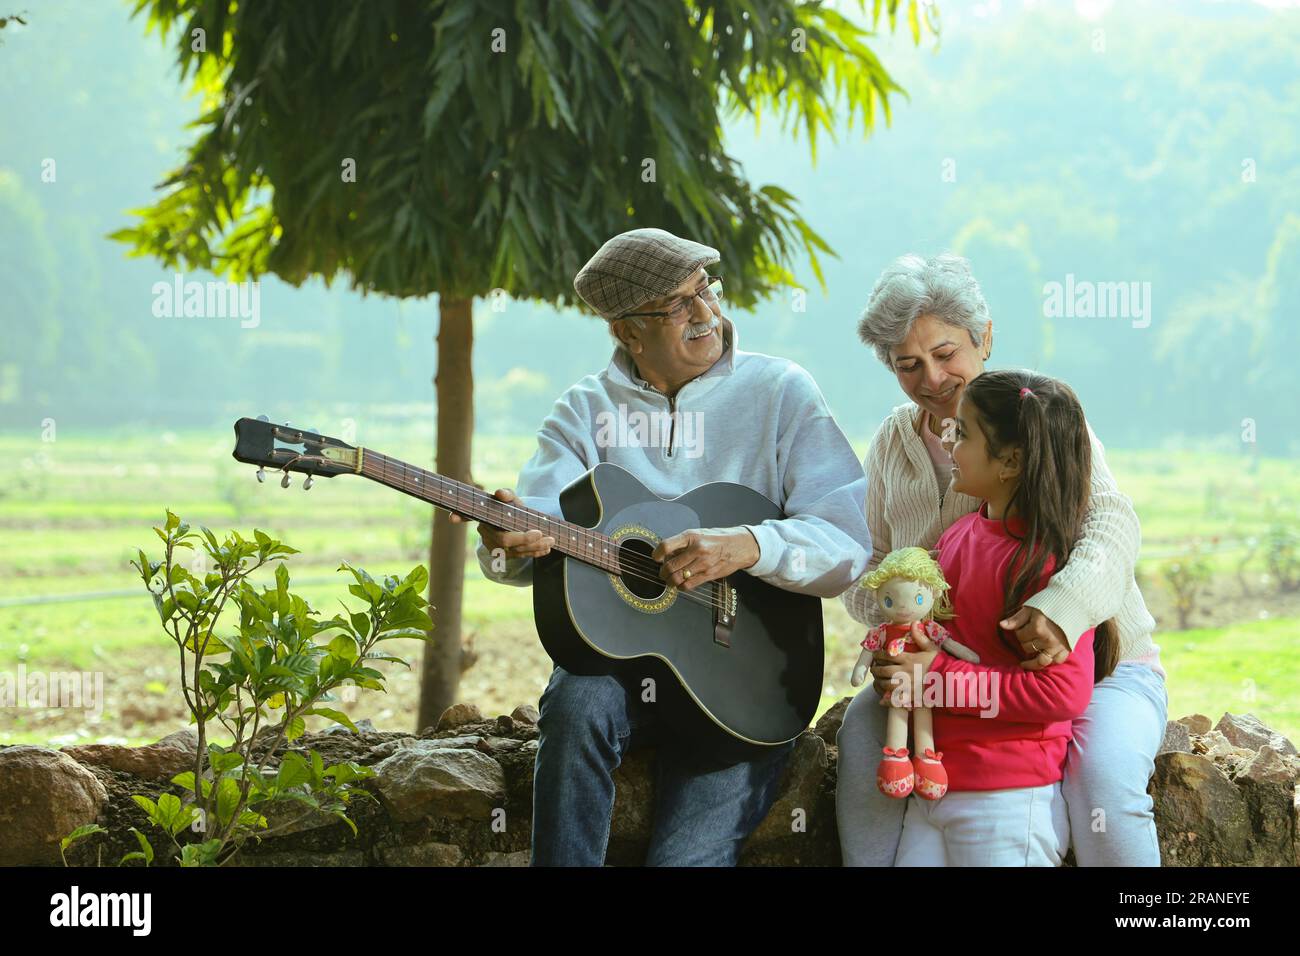 Felice vecchia coppia seduto insieme nel parco verde. Il nonno esegue canzoni suonando la chitarra e godendosi l'esibizione in serenità e tranquillità. Foto Stock